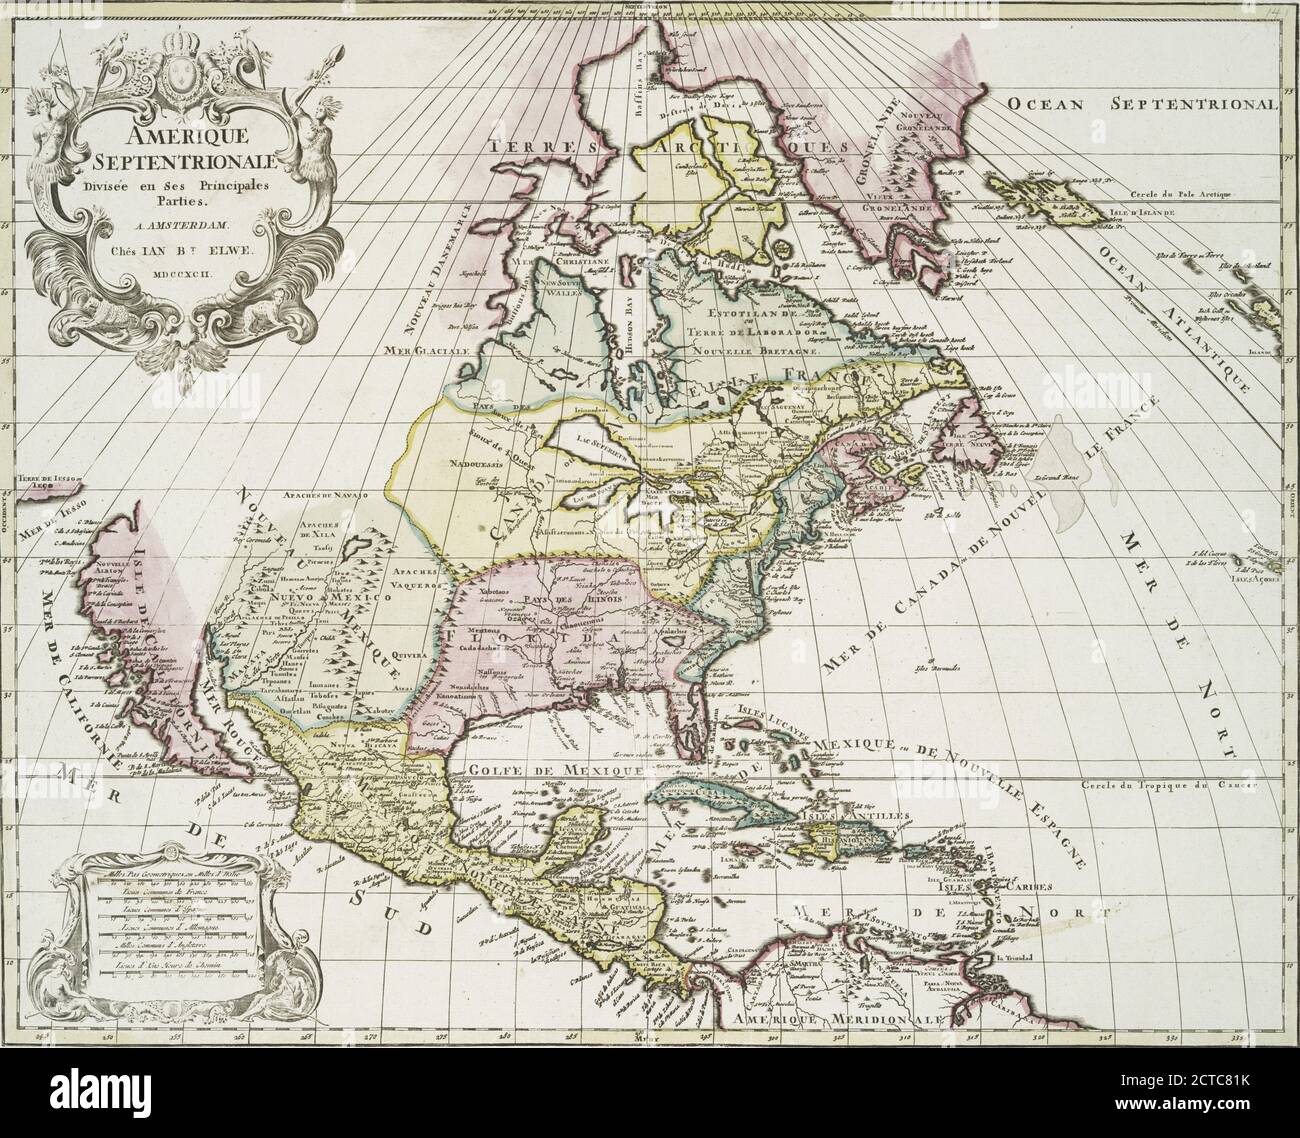 Amerique septentrionale divisée en ses principales parties., still image, Maps, 1792 Stock Photo